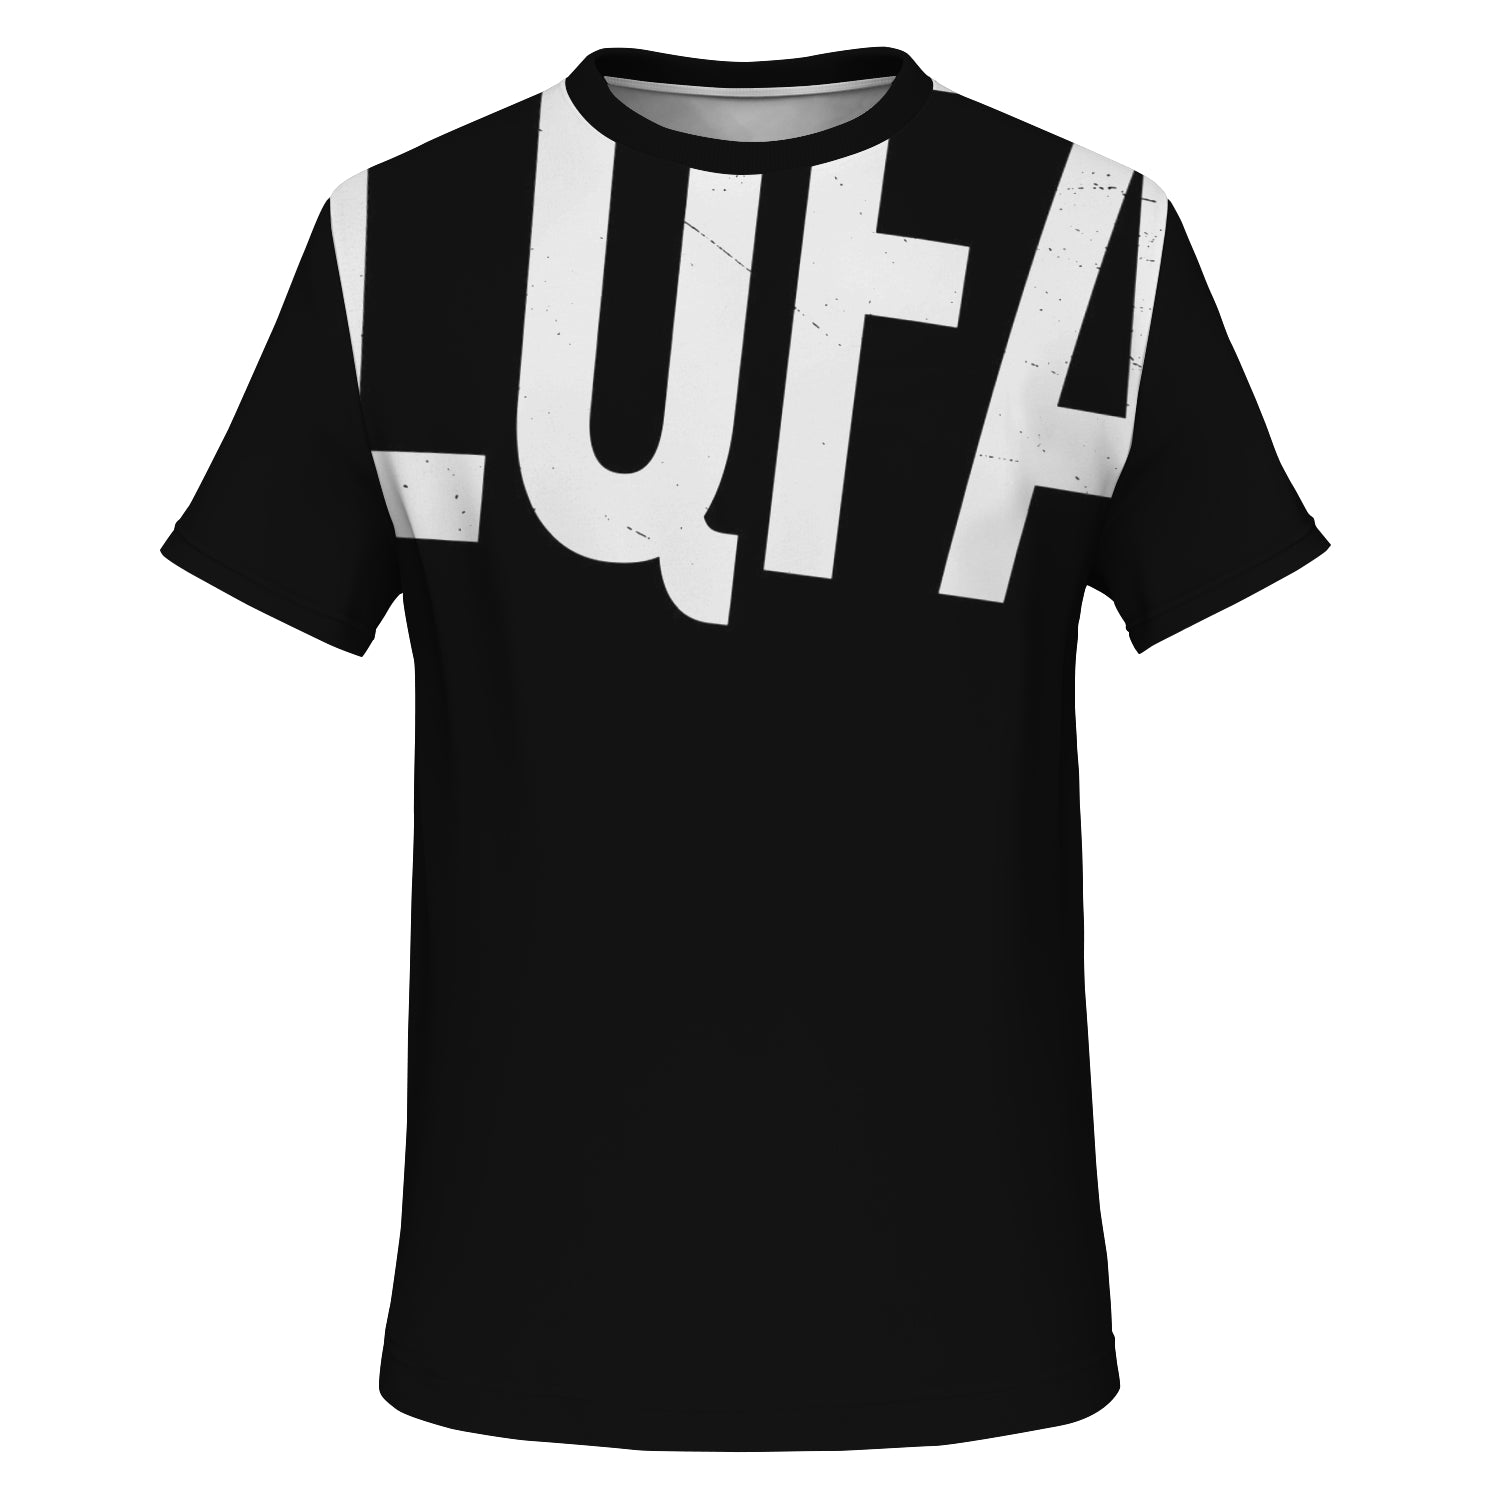 LQFA unisex PREMIUM t-shirt